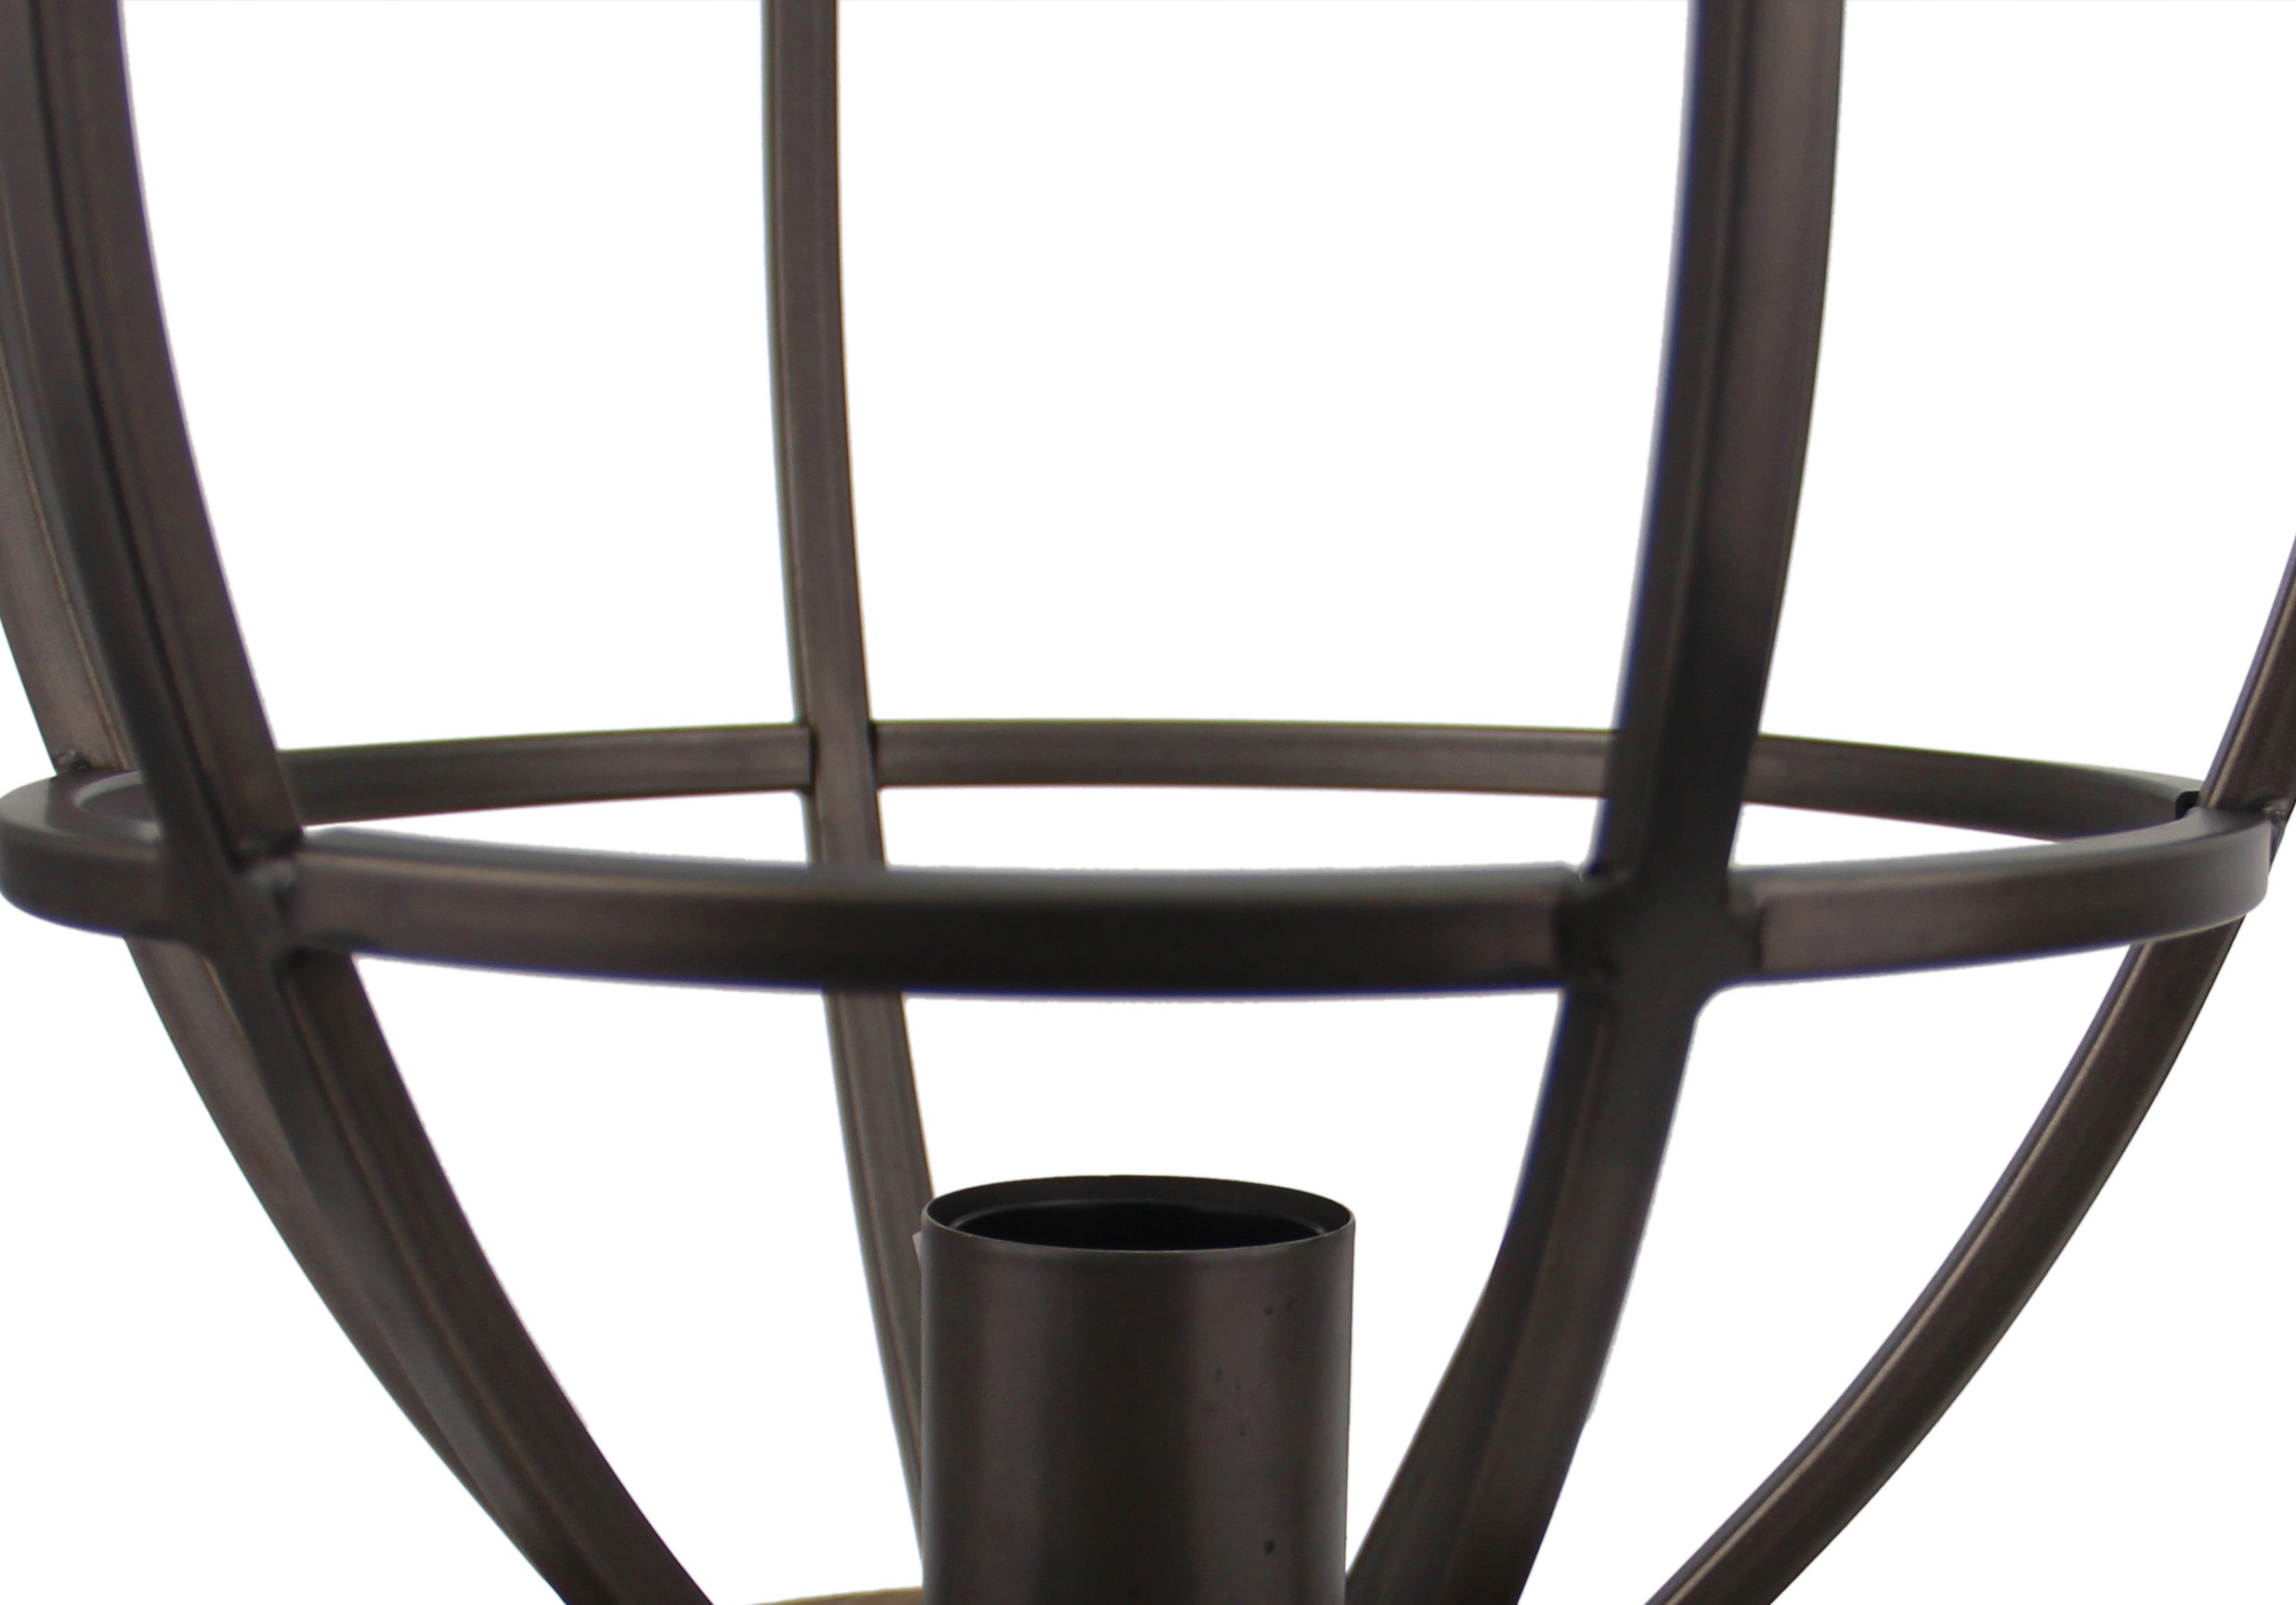 Aperto tafellamp - 25 cm - zwart black steel met vintage wood